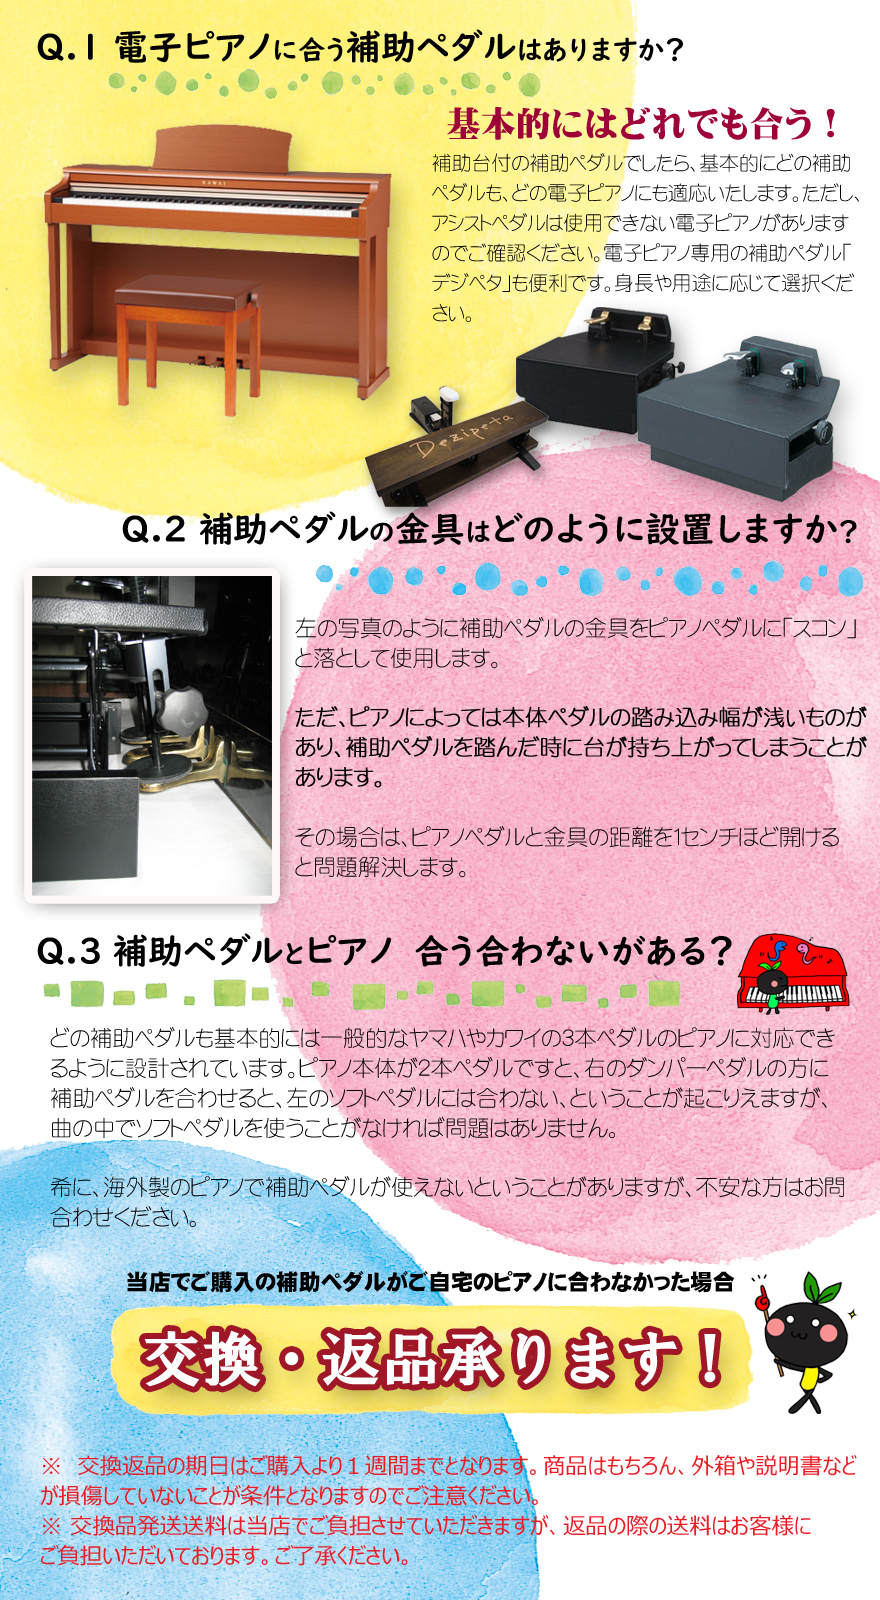 3000円 【初売り】 ピアノ補助ペダル アシストペダル 踏み台